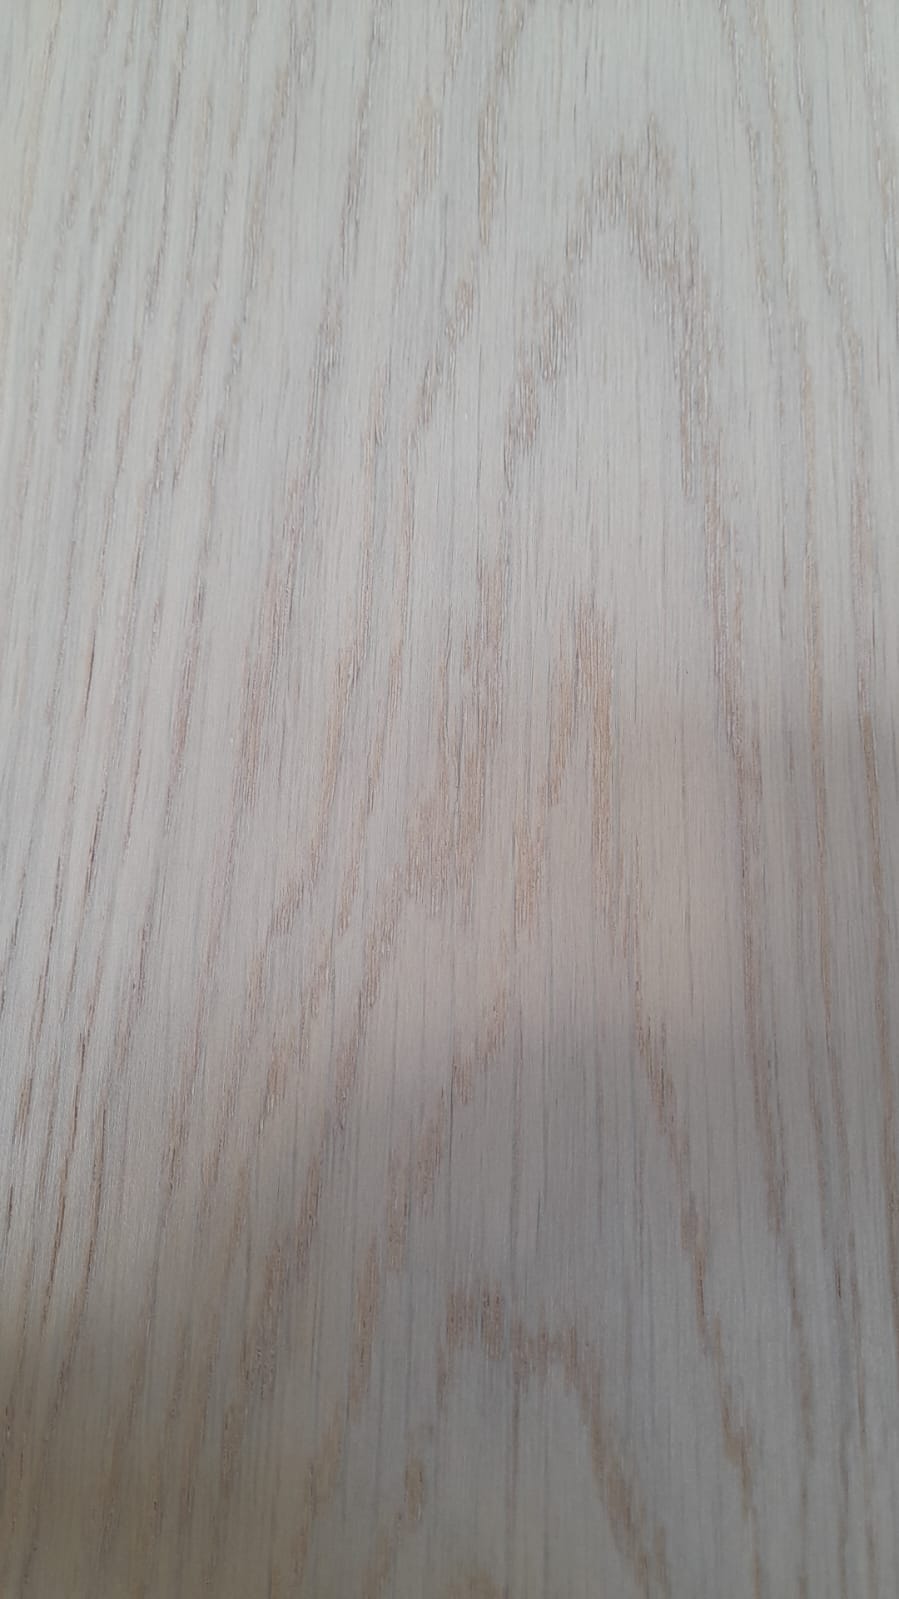 GoodHome Liskamm Natural Real Oak Wood Top Layer Flooring Varnished 7 Planks 7137-7